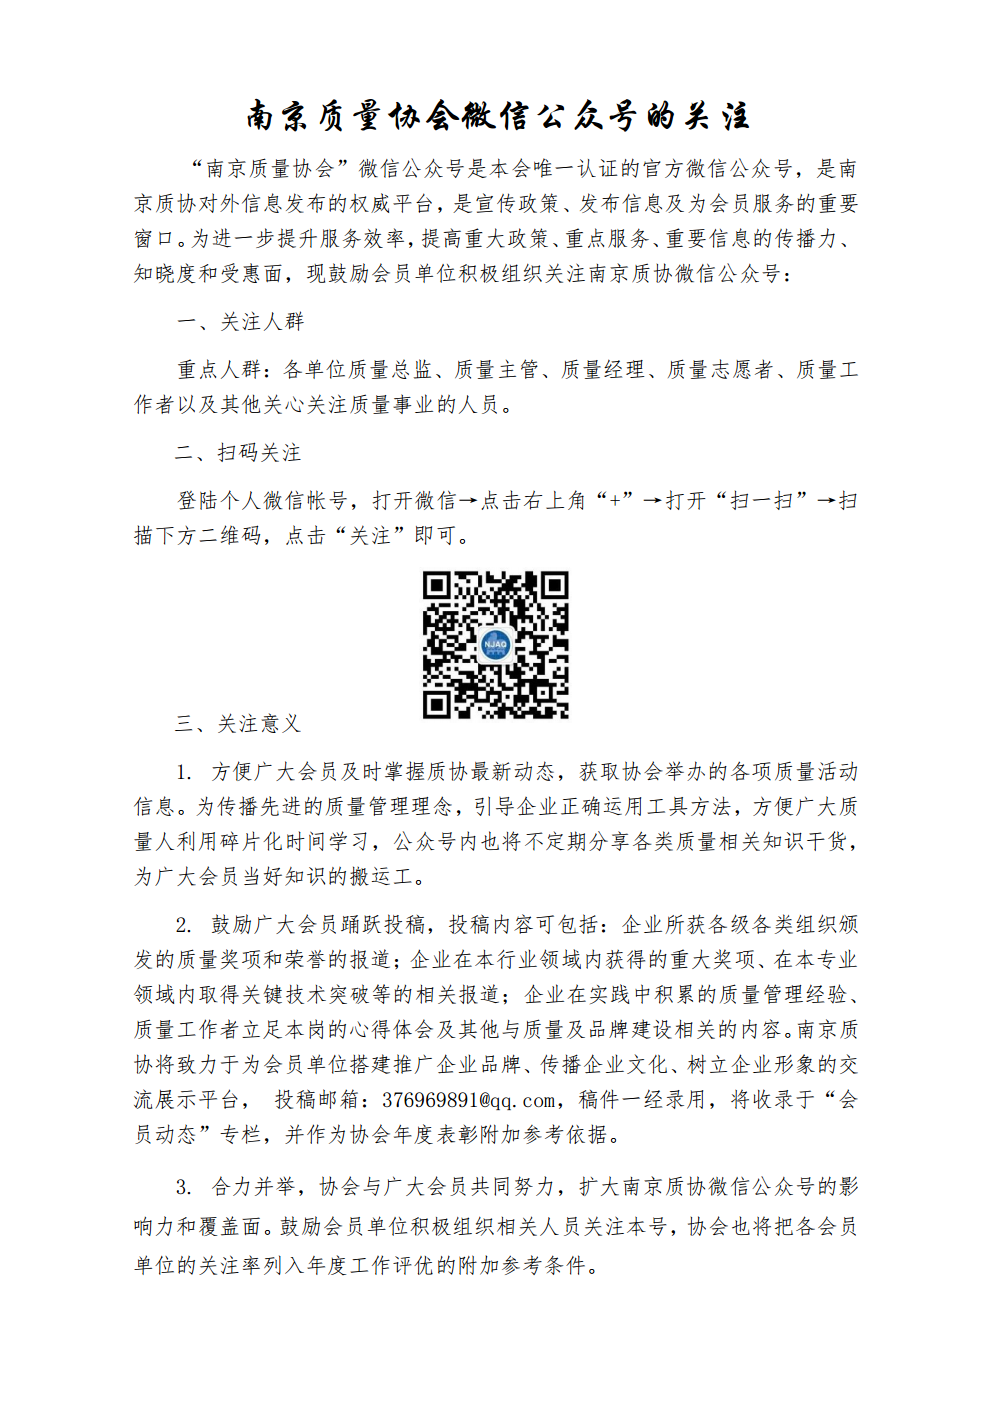 7 南京质量协会微信公众号的关注.png